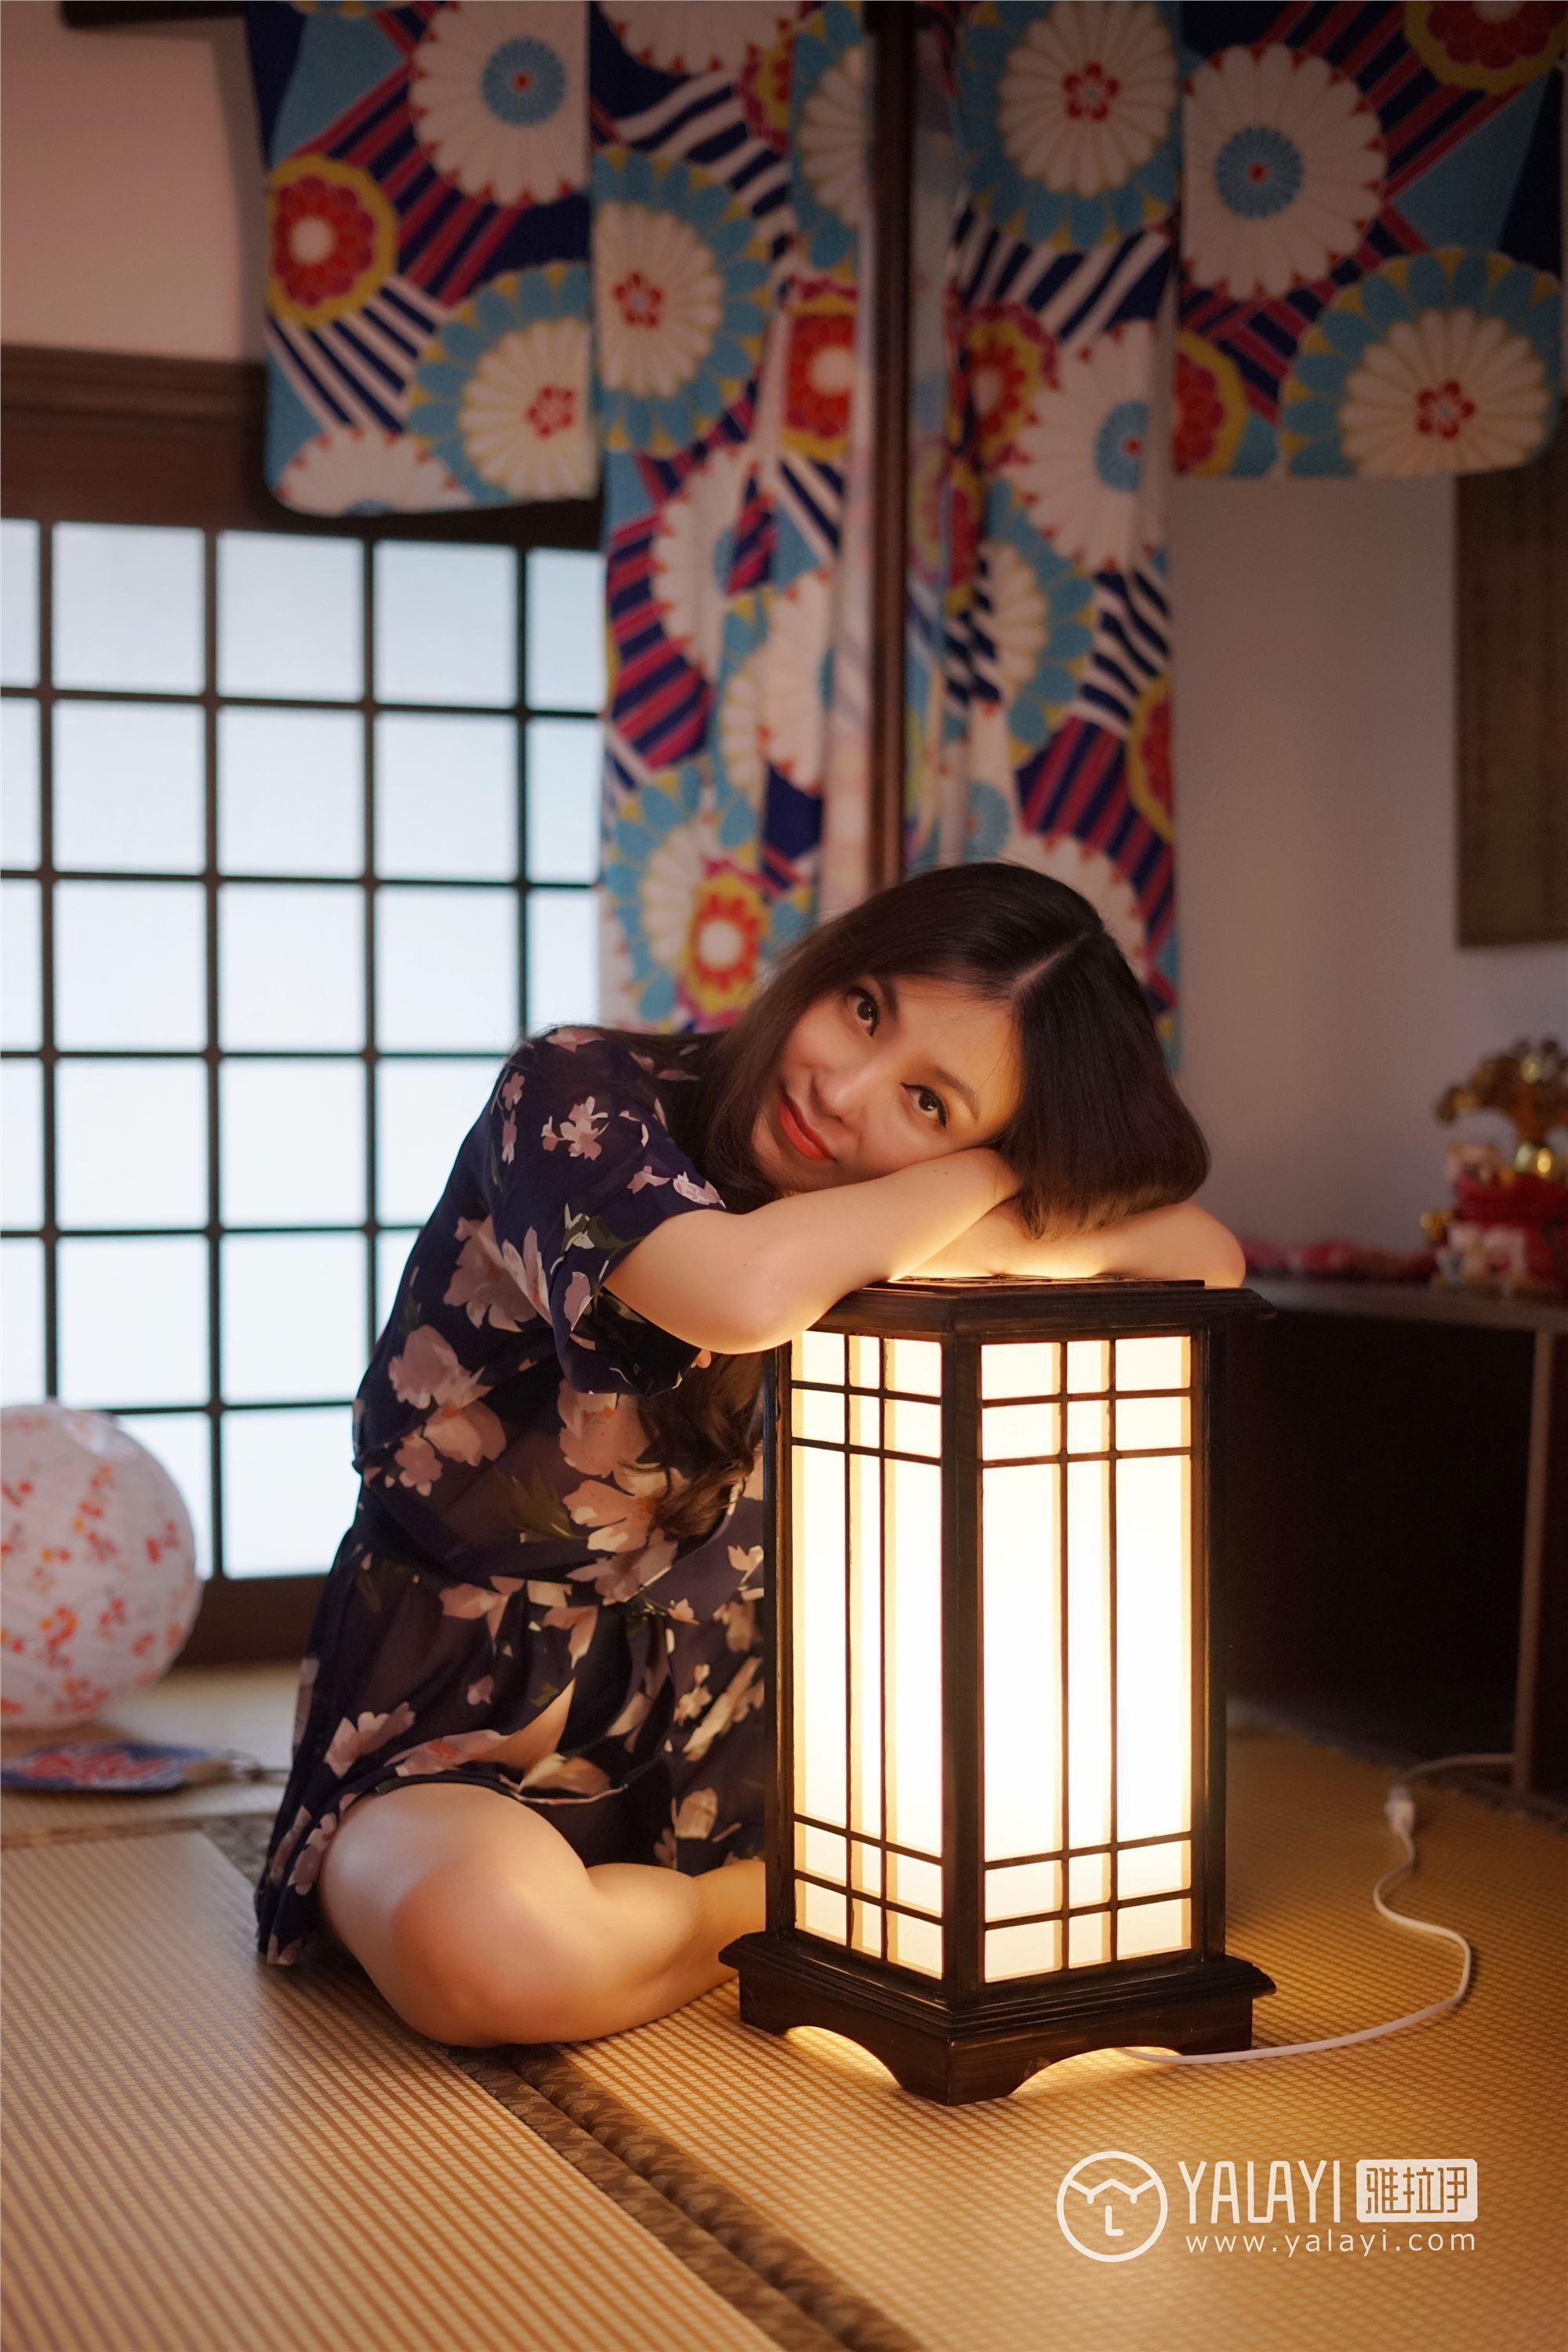 [yalayi yalayi] December 16, 2018 no.016 the charm of kimono Shen Ziyun